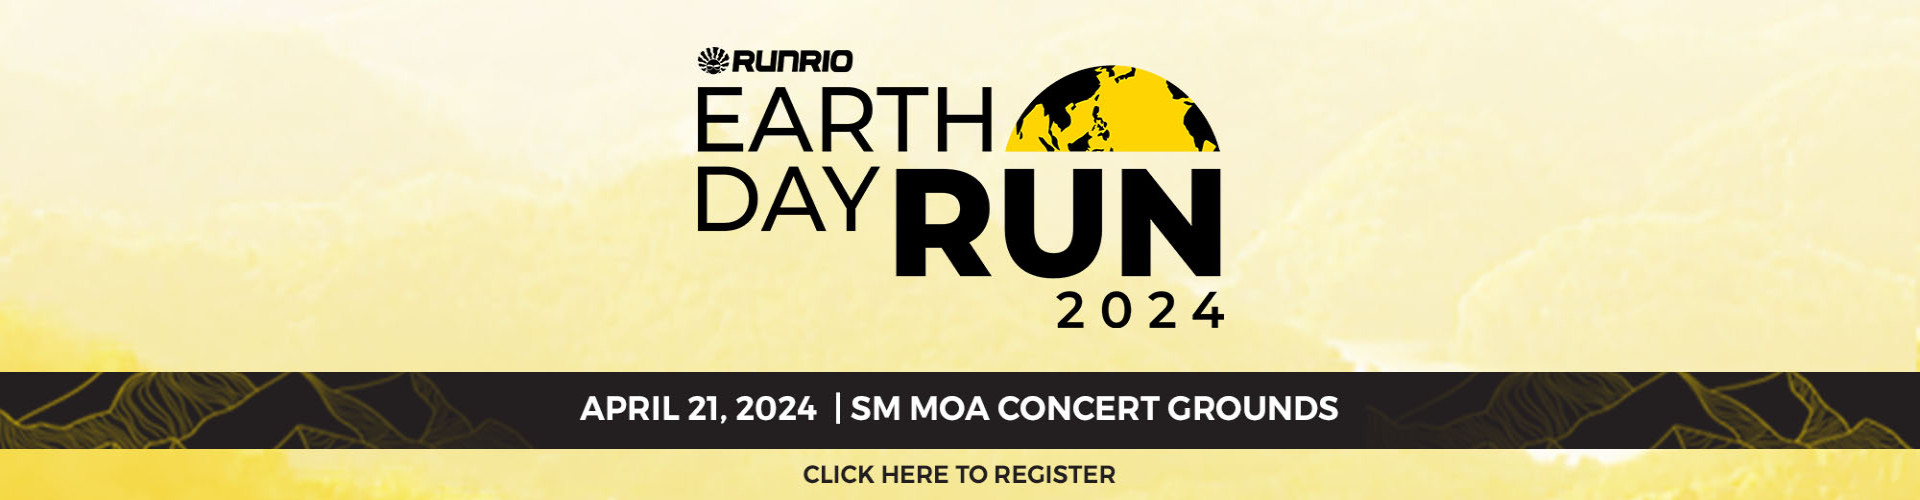 Earth Day Run 2024